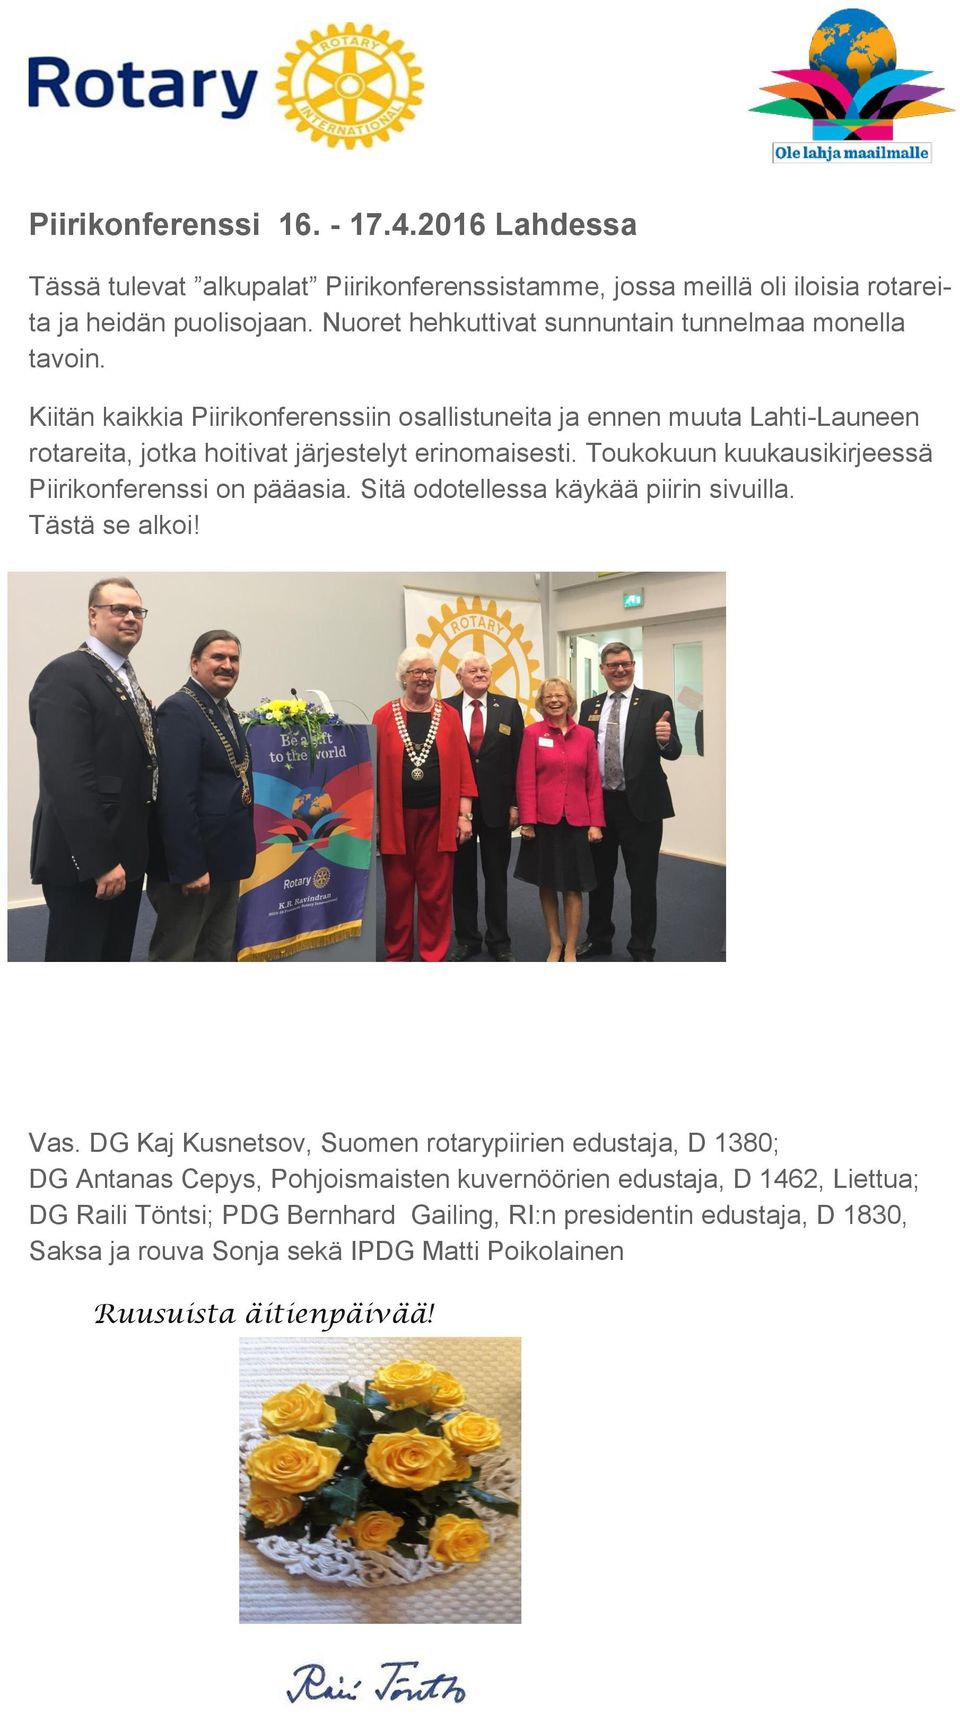 Kiitän kaikkia Piirikonferenssiin osallistuneita ja ennen muuta Lahti-Launeen rotareita, jotka hoitivat järjestelyt erinomaisesti.